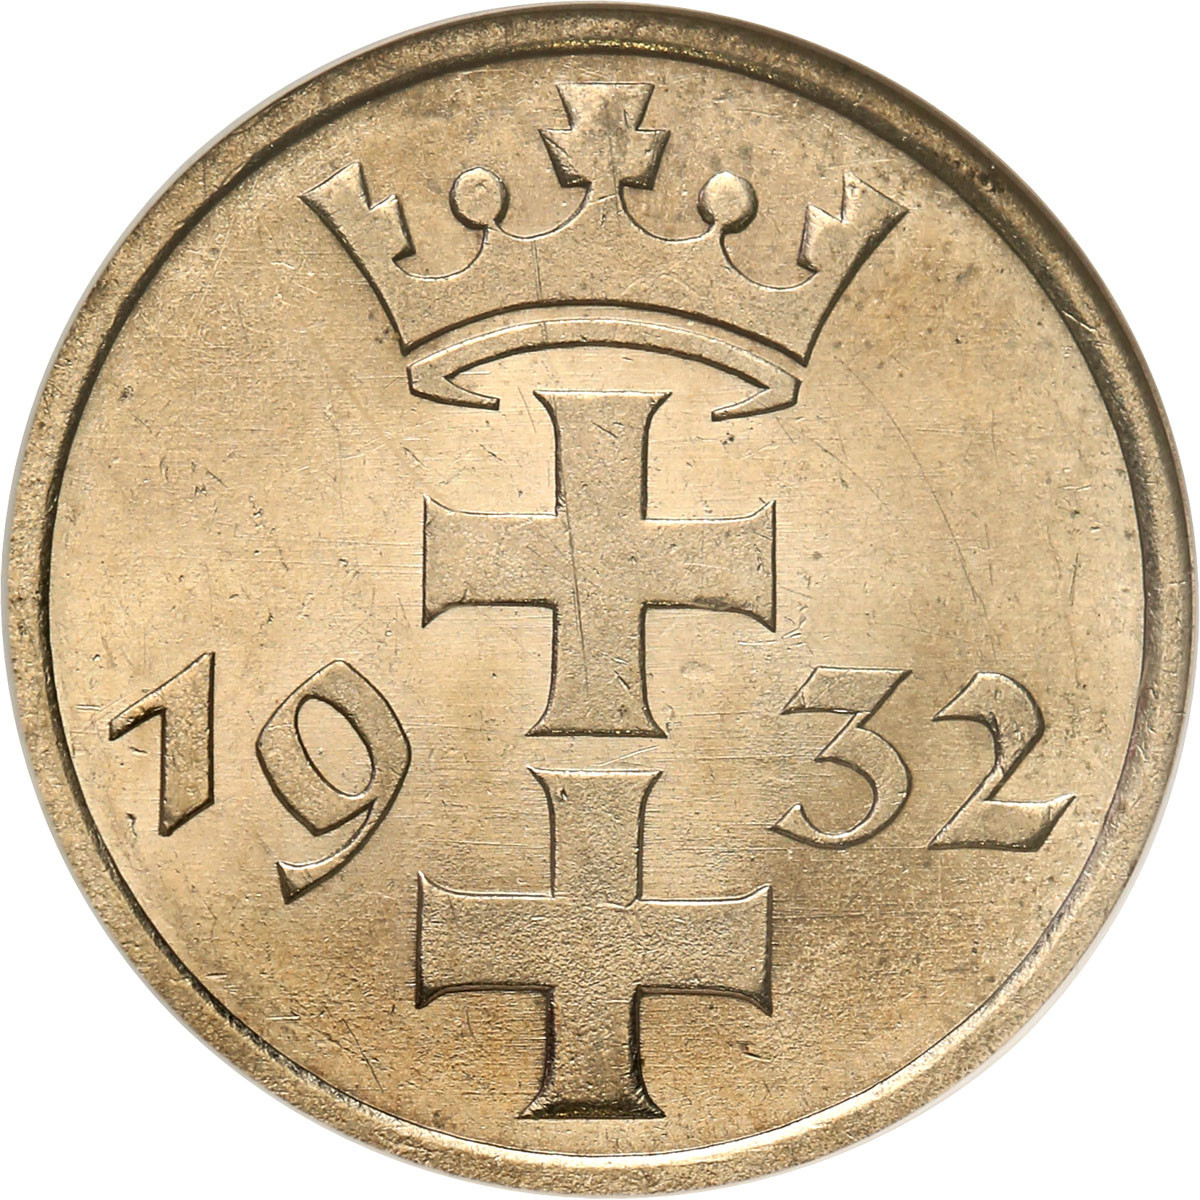 Wolne Miasto Gdańsk/Danzig. 1 Gulden 1932 NGC MS63 - PIĘKNY